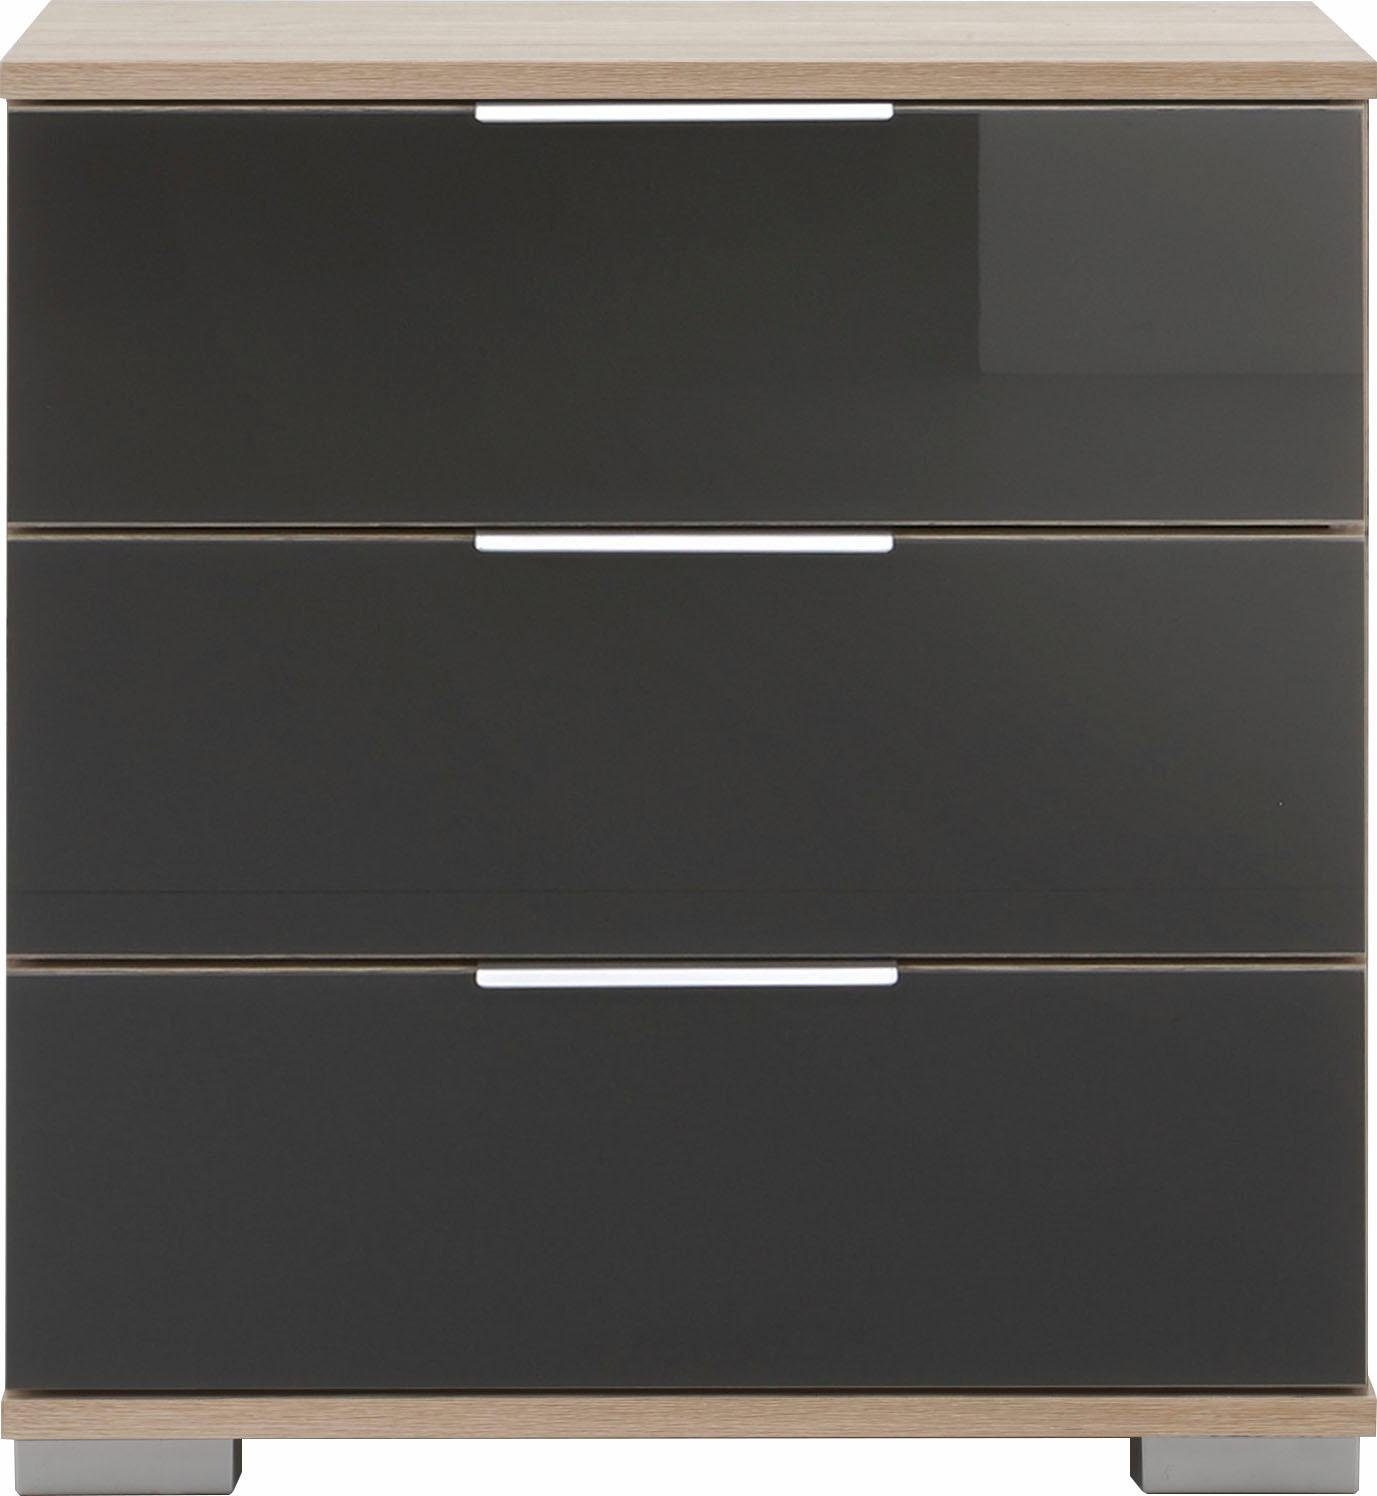 Wimex Nachtkonsole Easy, mit Glas- oder Spiegelfront struktureichefarben hell/Grauglas